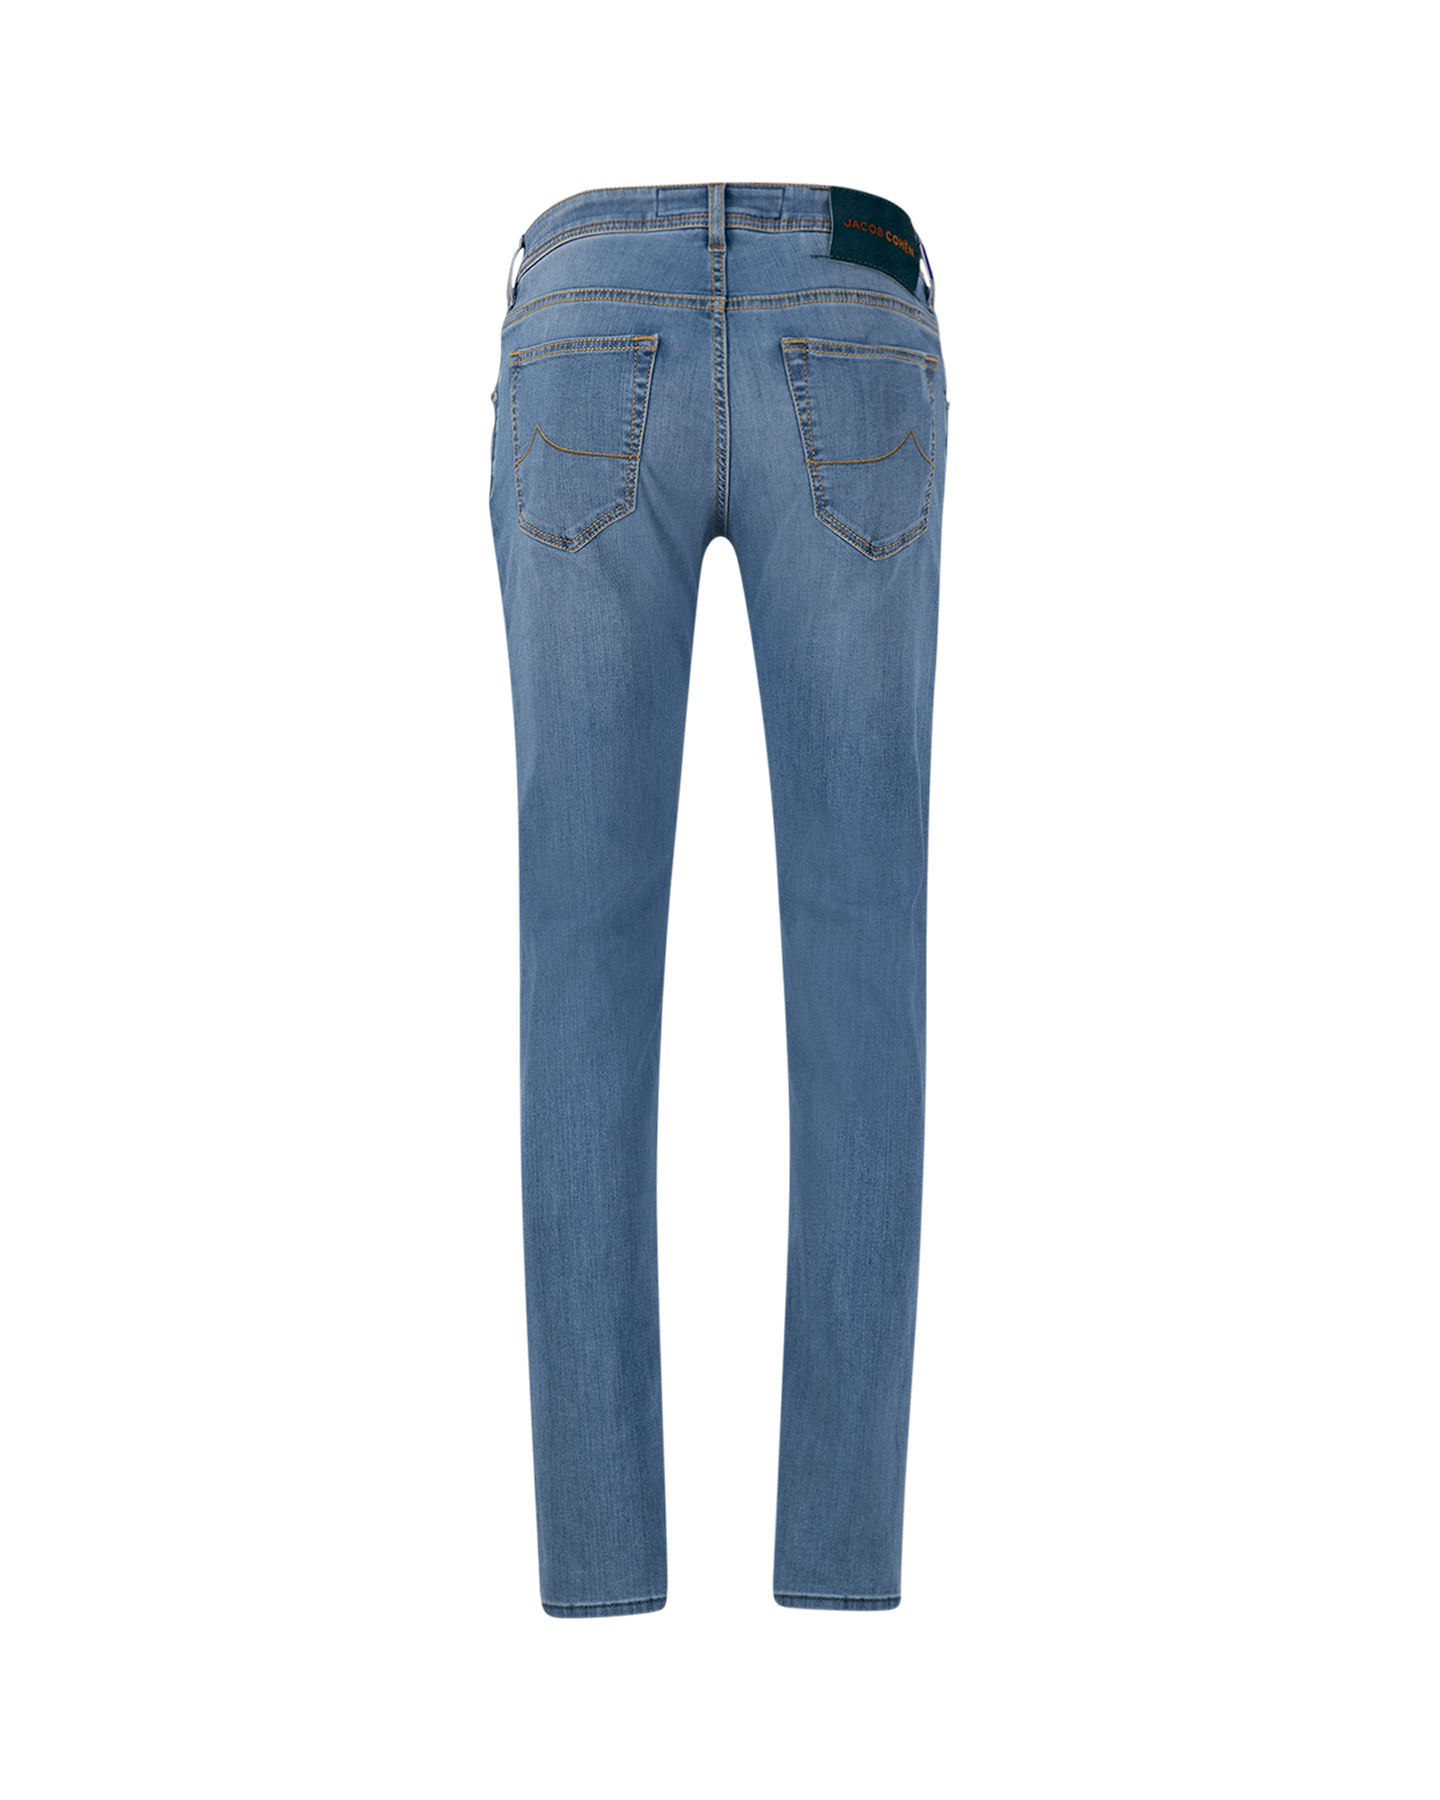 Jacob Cohen Nick Slim Light-Blue Stone Bleach Jeans 717D DENIM 2